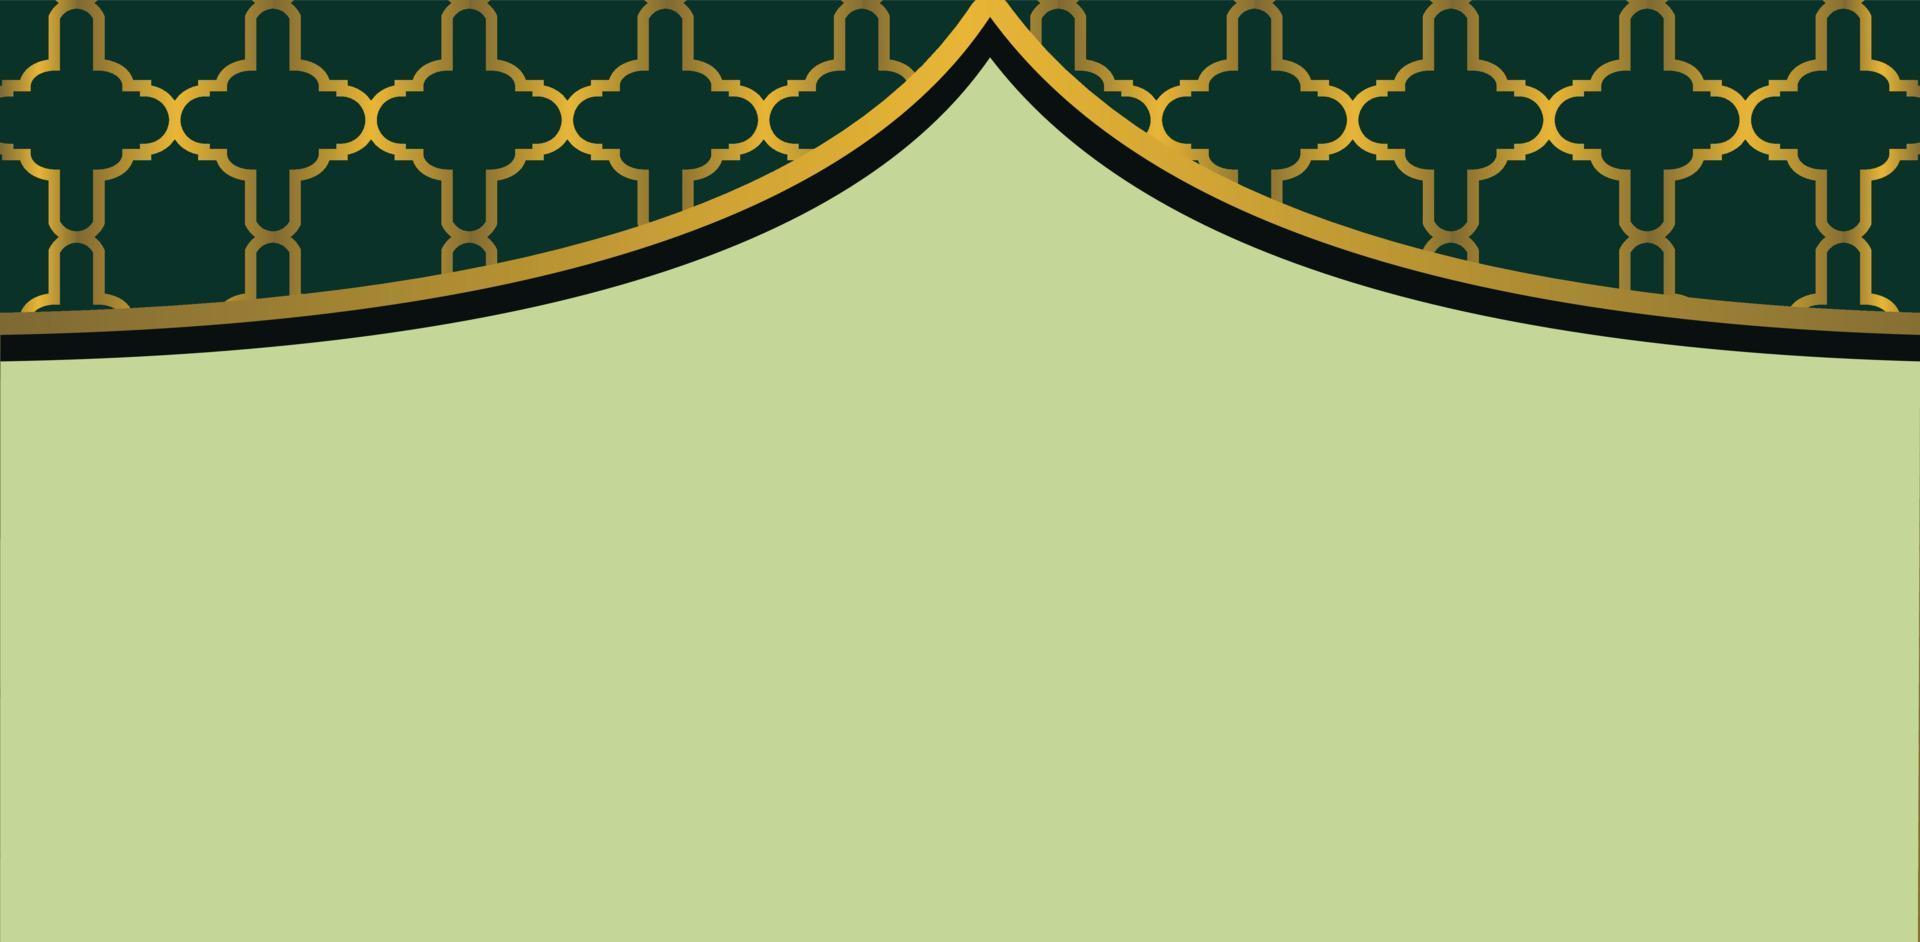 Islamic background design for ramadan Vector